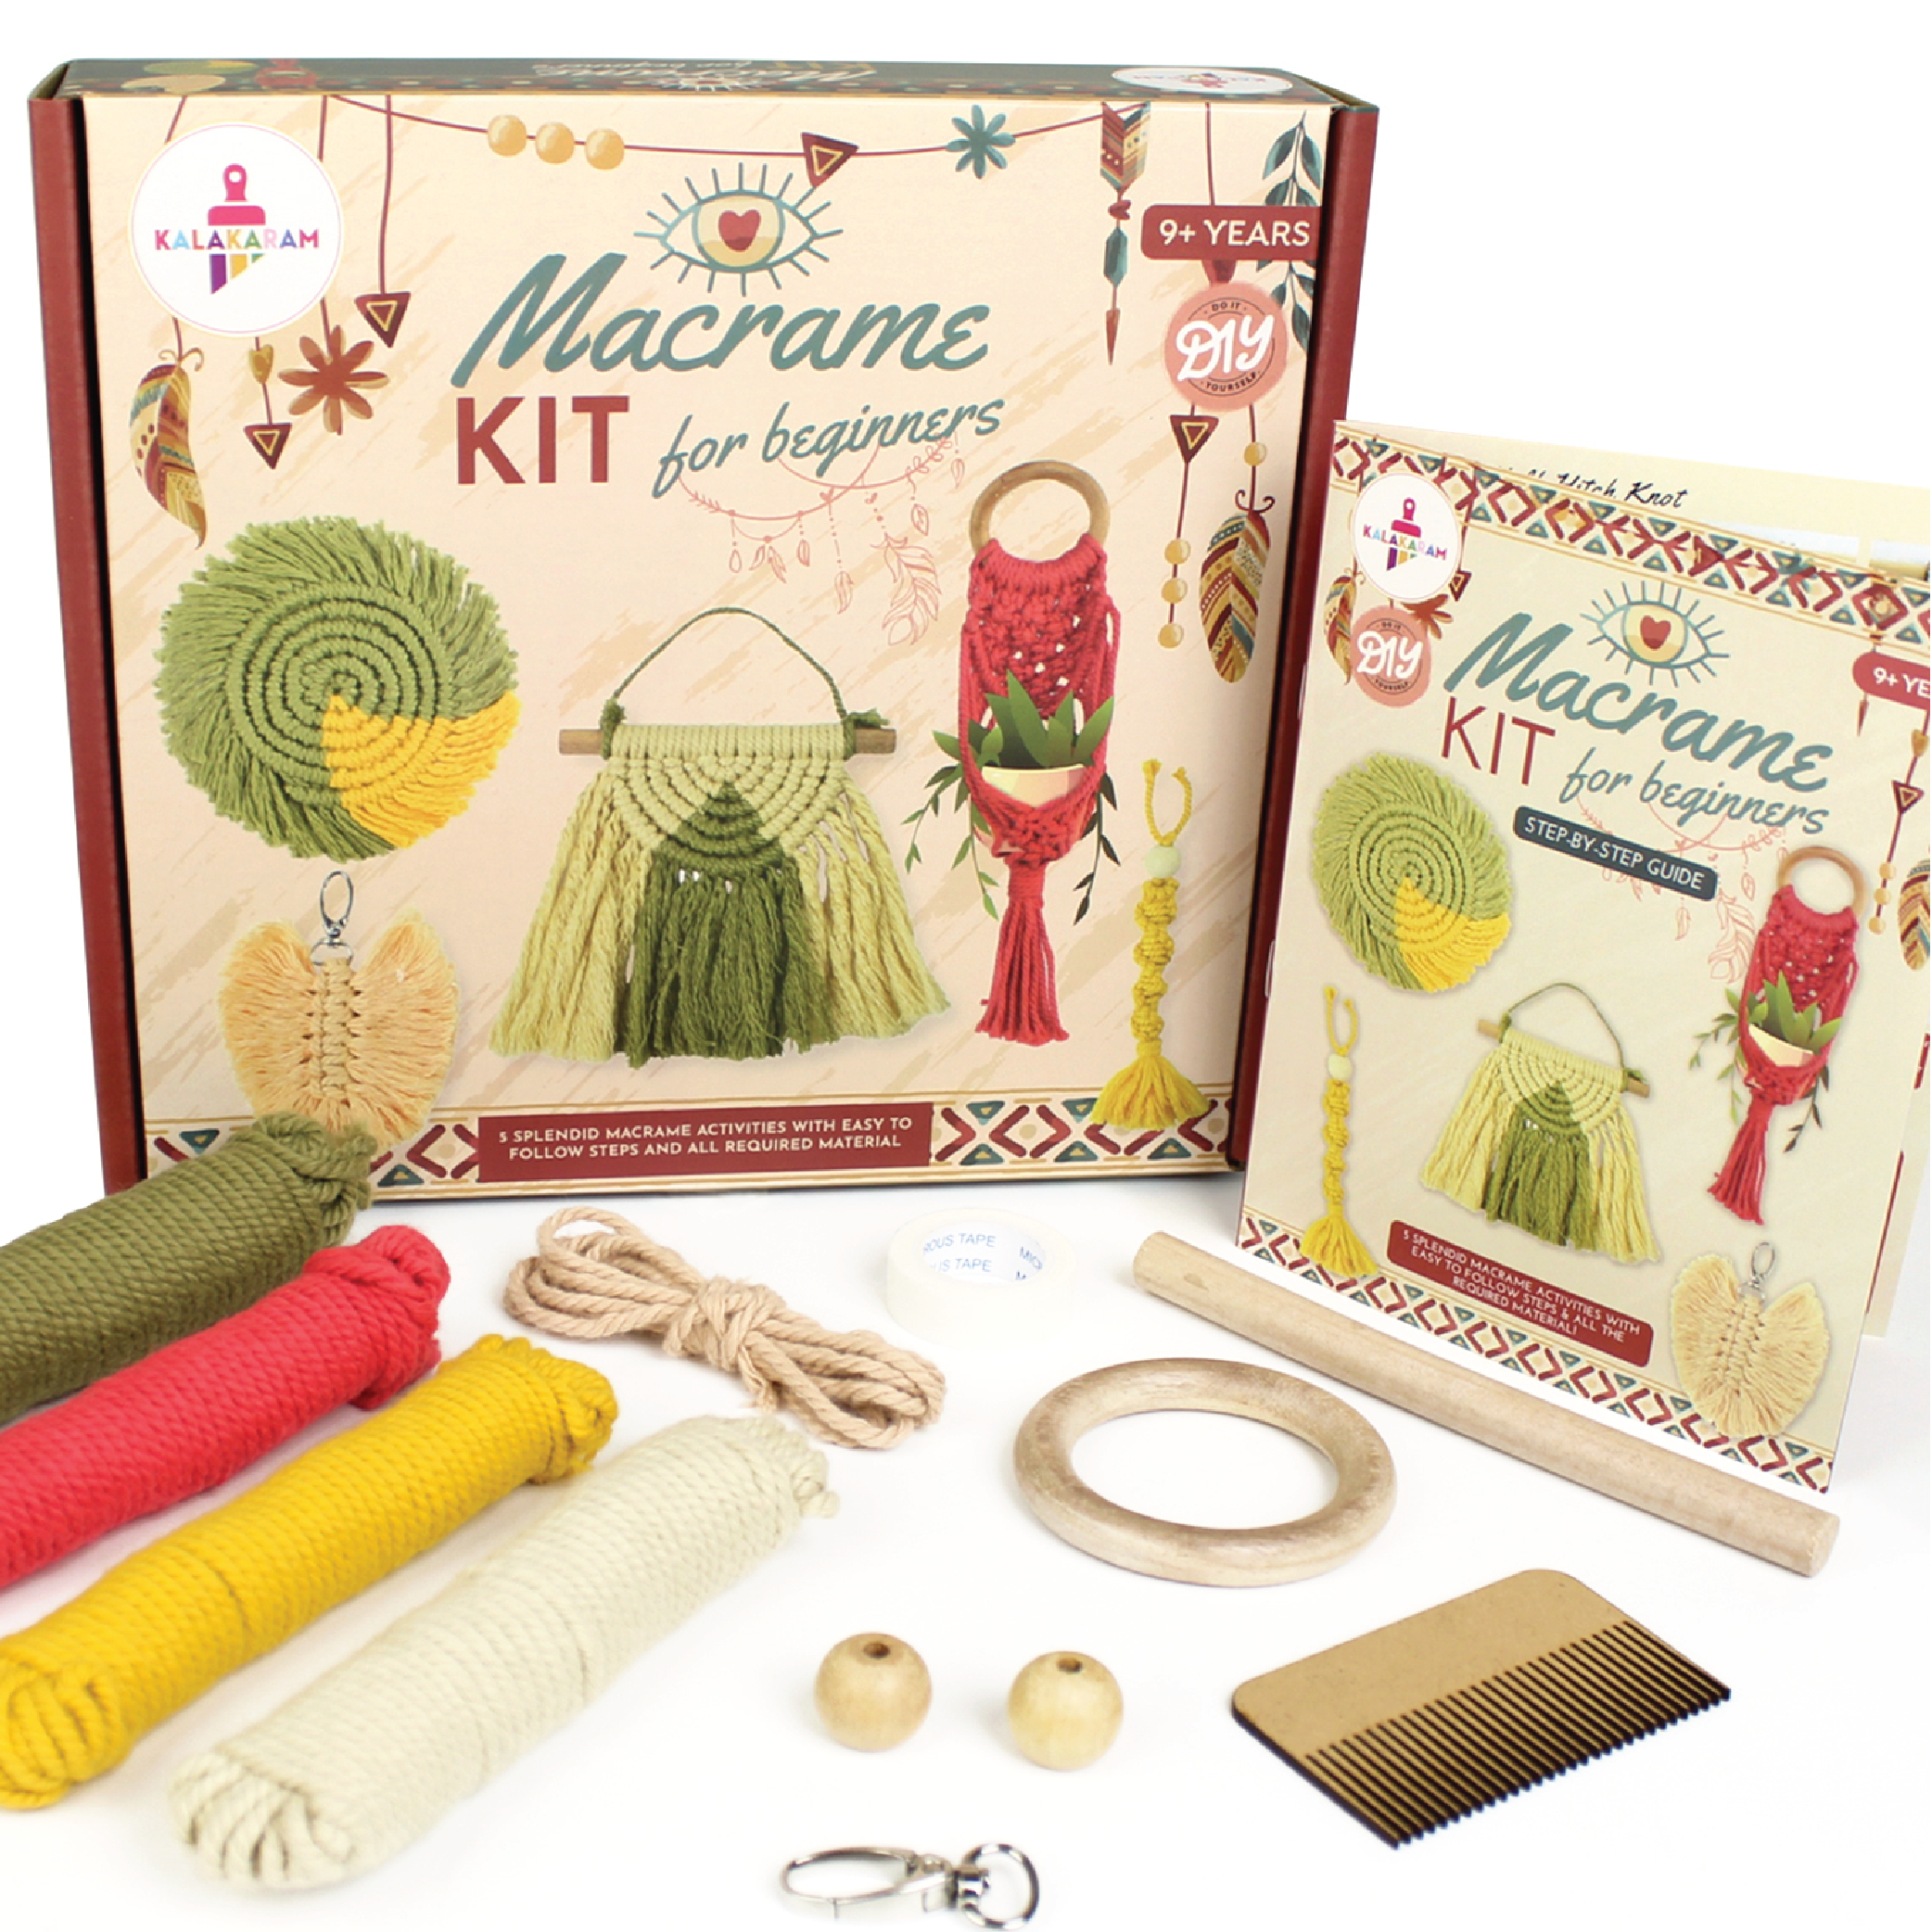 Macrame Kit for Beginners